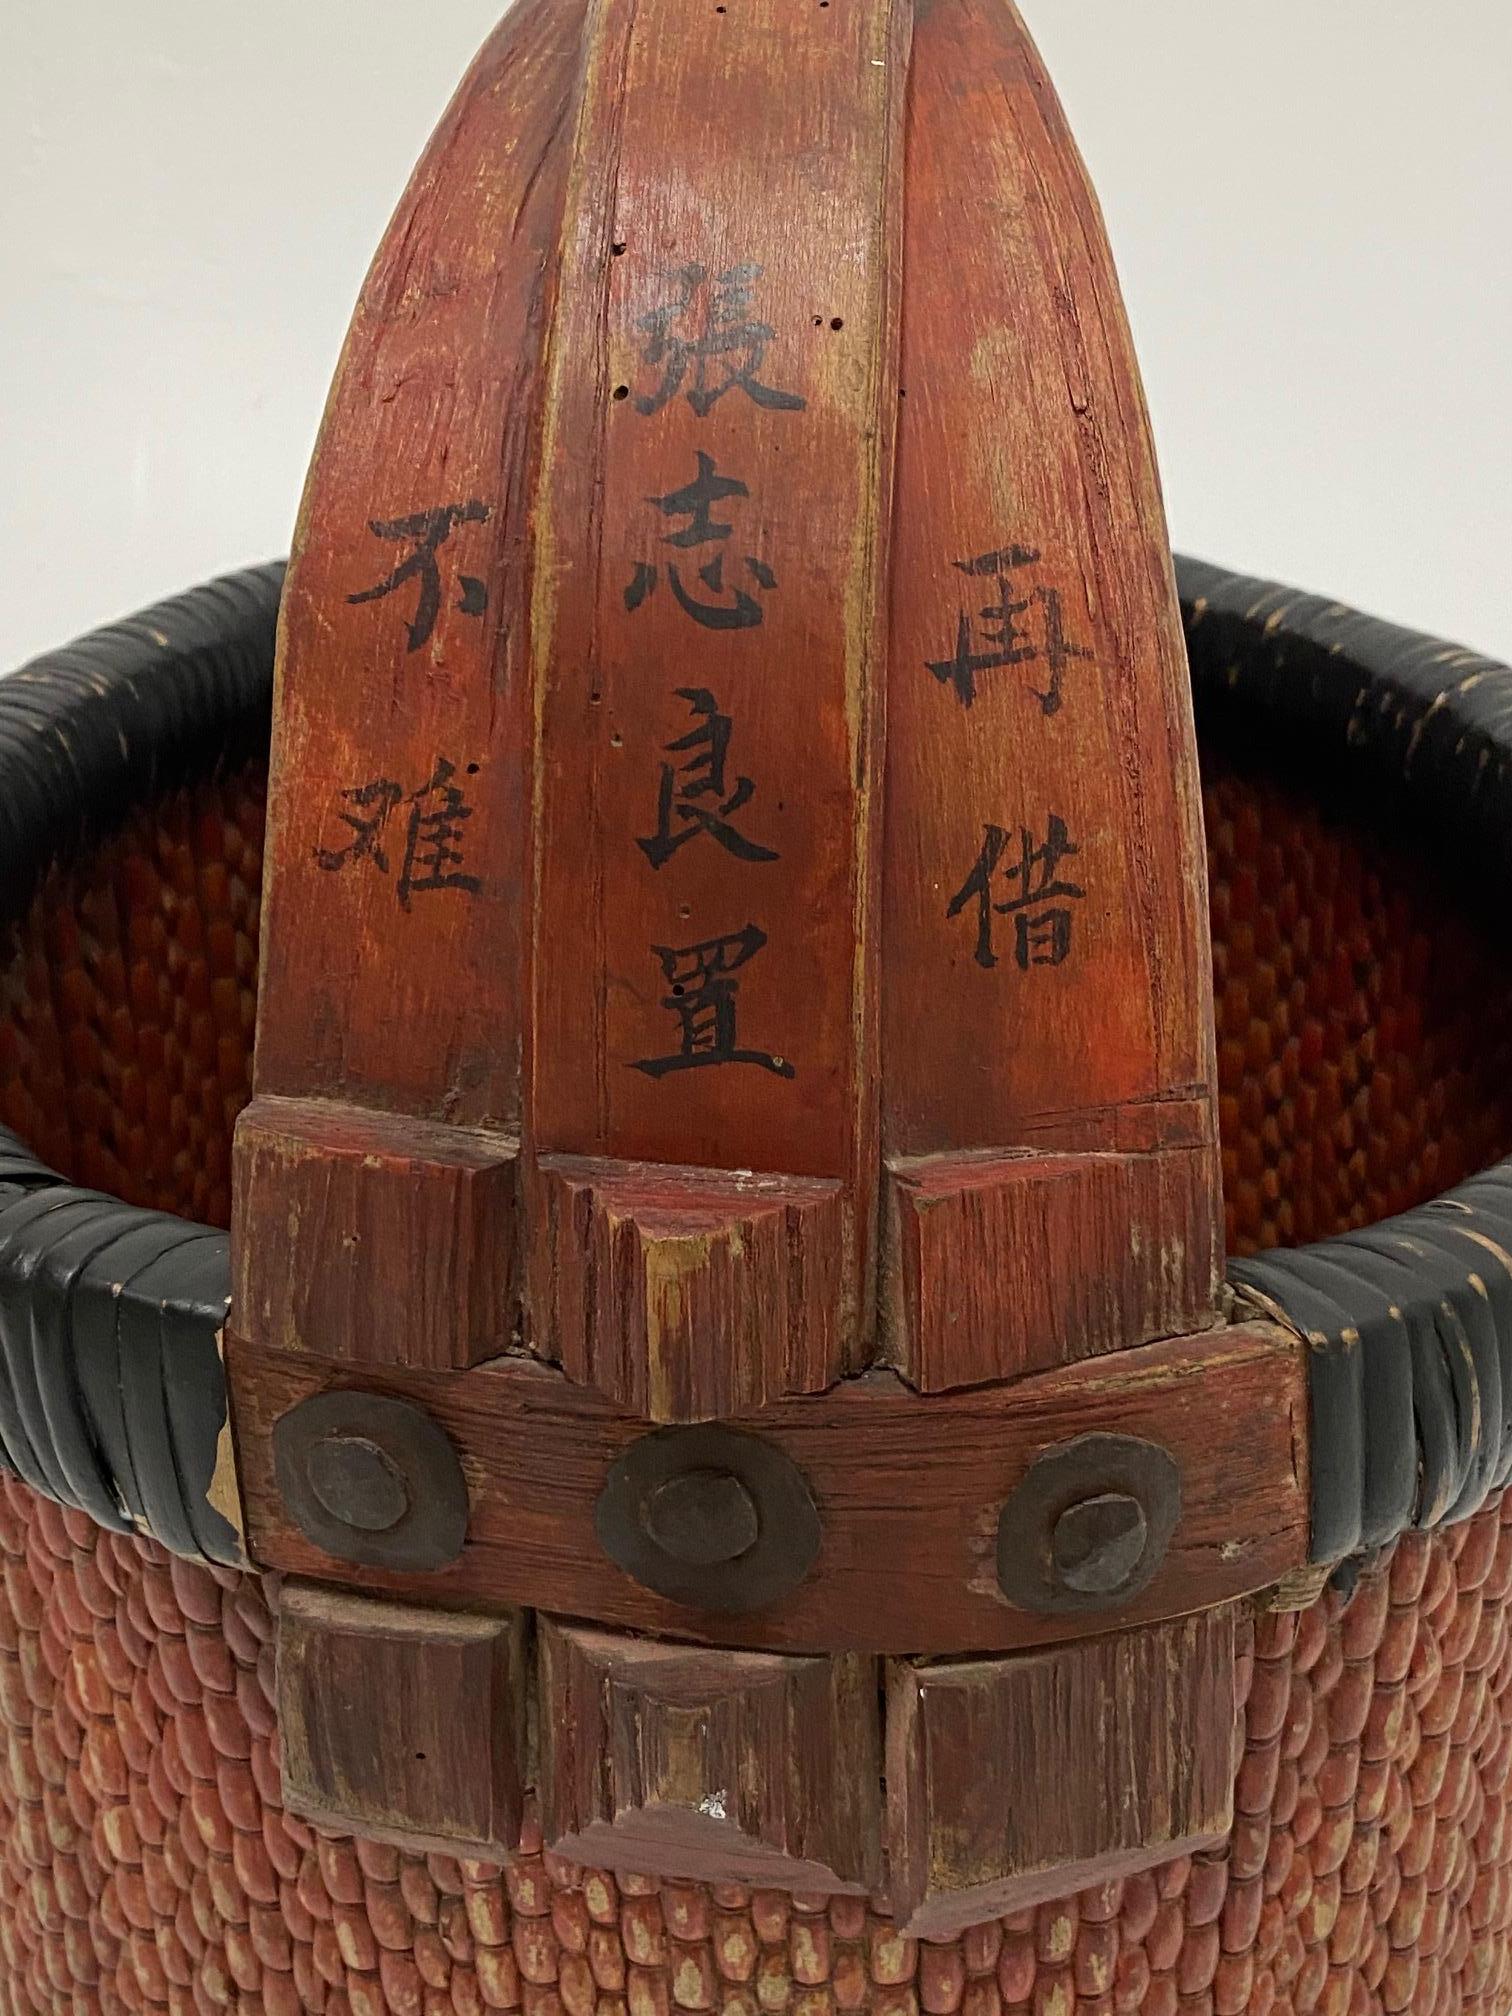 Ein wunderschöner chinesischer Marktkorb aus geflochtenem Rattan mit dekorativen Schriftzügen auf dem hölzernen Griff und einer tollen rötlichen Patina.